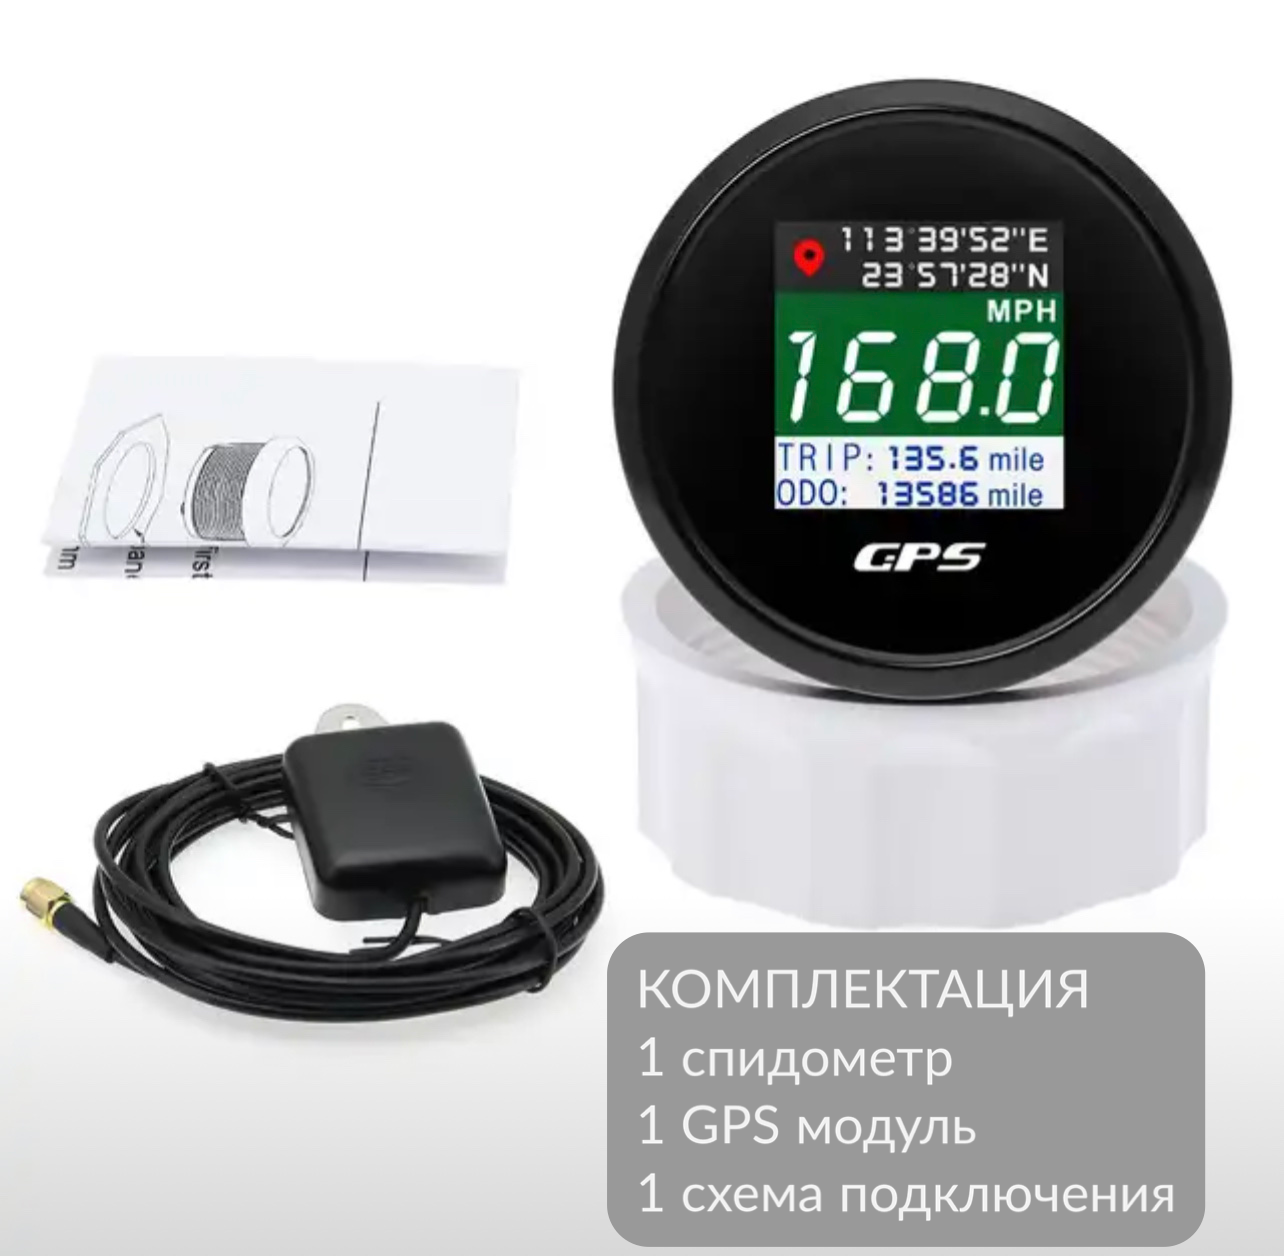 Электронный спидометр GPS для автомобилей, лодок, катеров и яхт черный, 52 мм